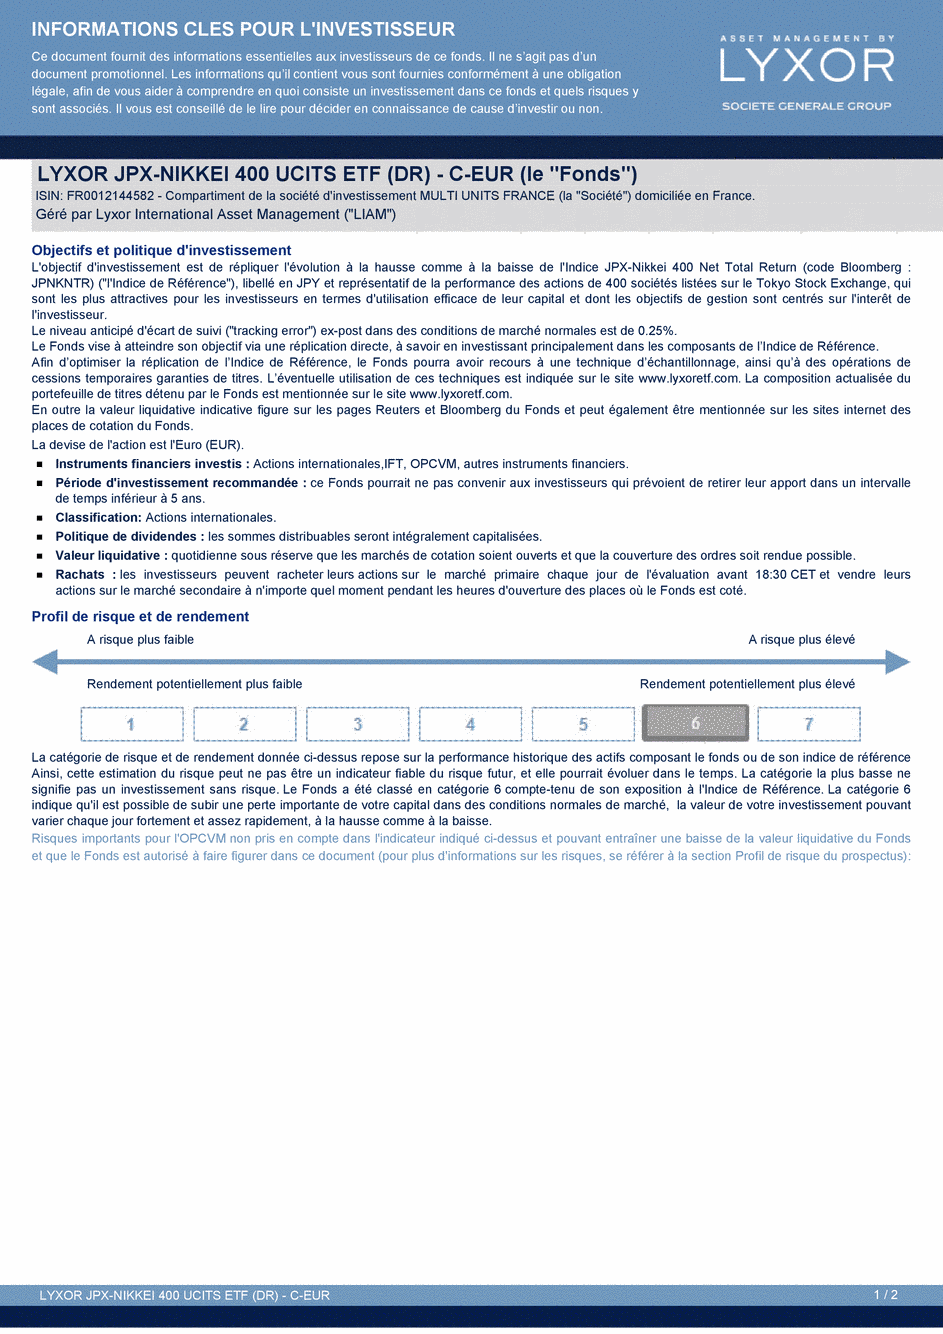 DICI LYXOR JPX-NIKKEI 400 UCITS ETF (DR) C-EUR - 20/08/2015 - Français